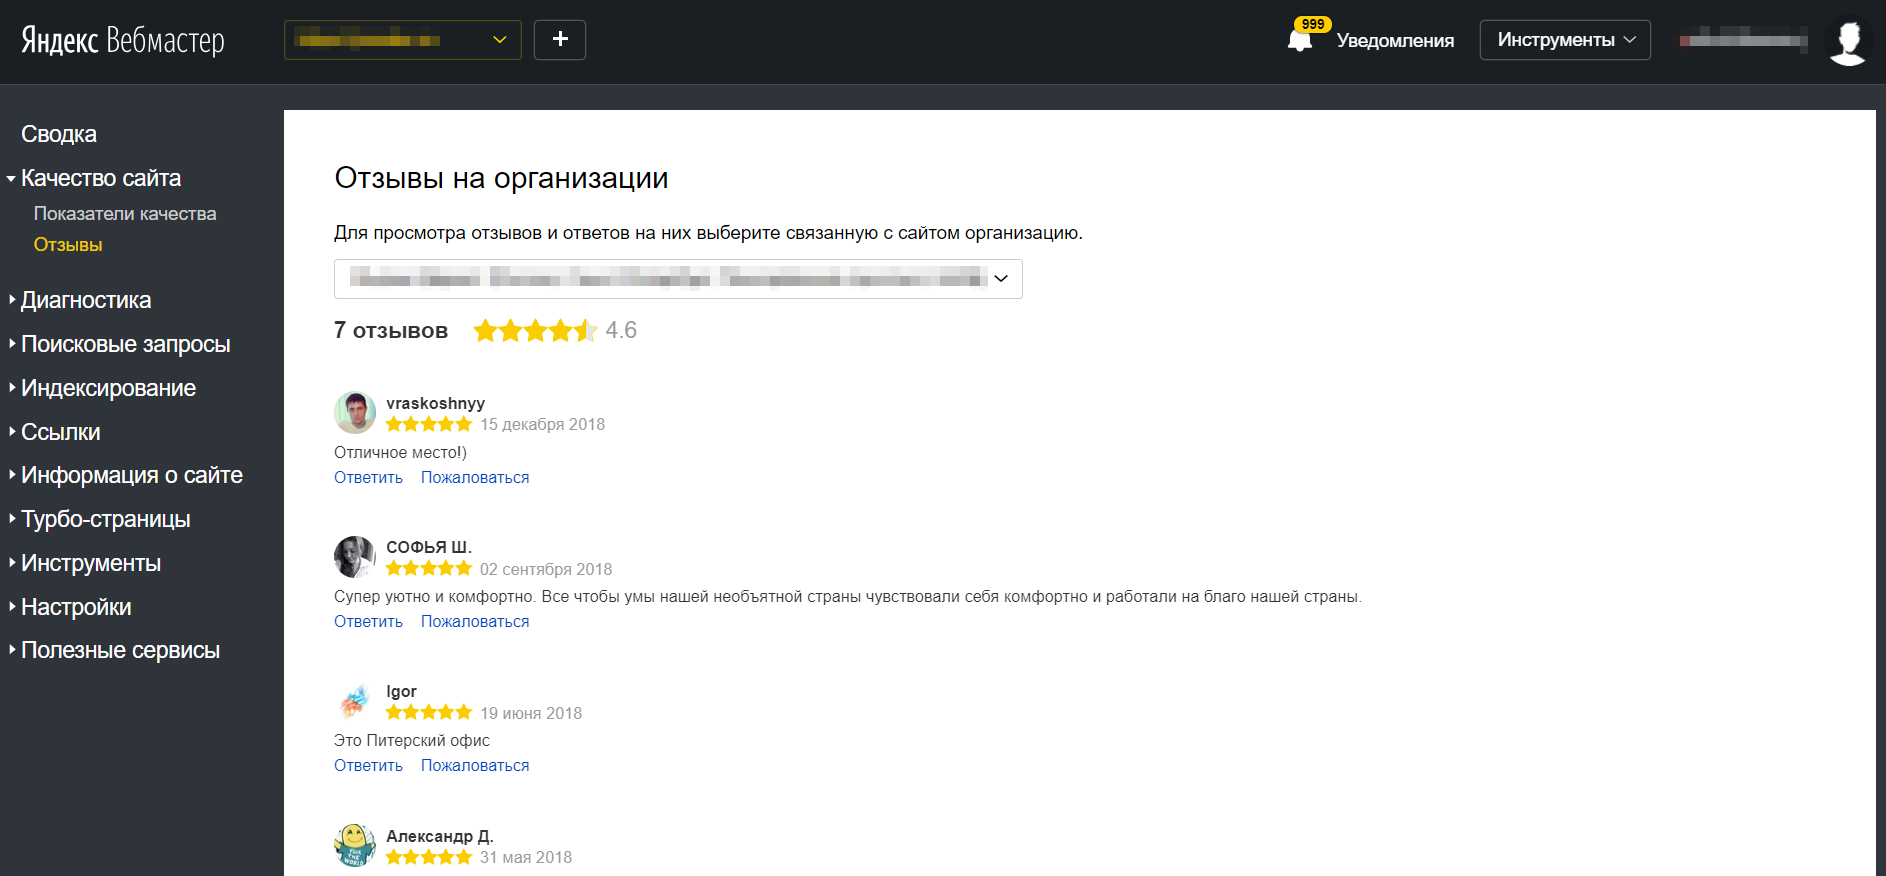 Яндекс позволил следить за отзывами прямо из Вебмастера